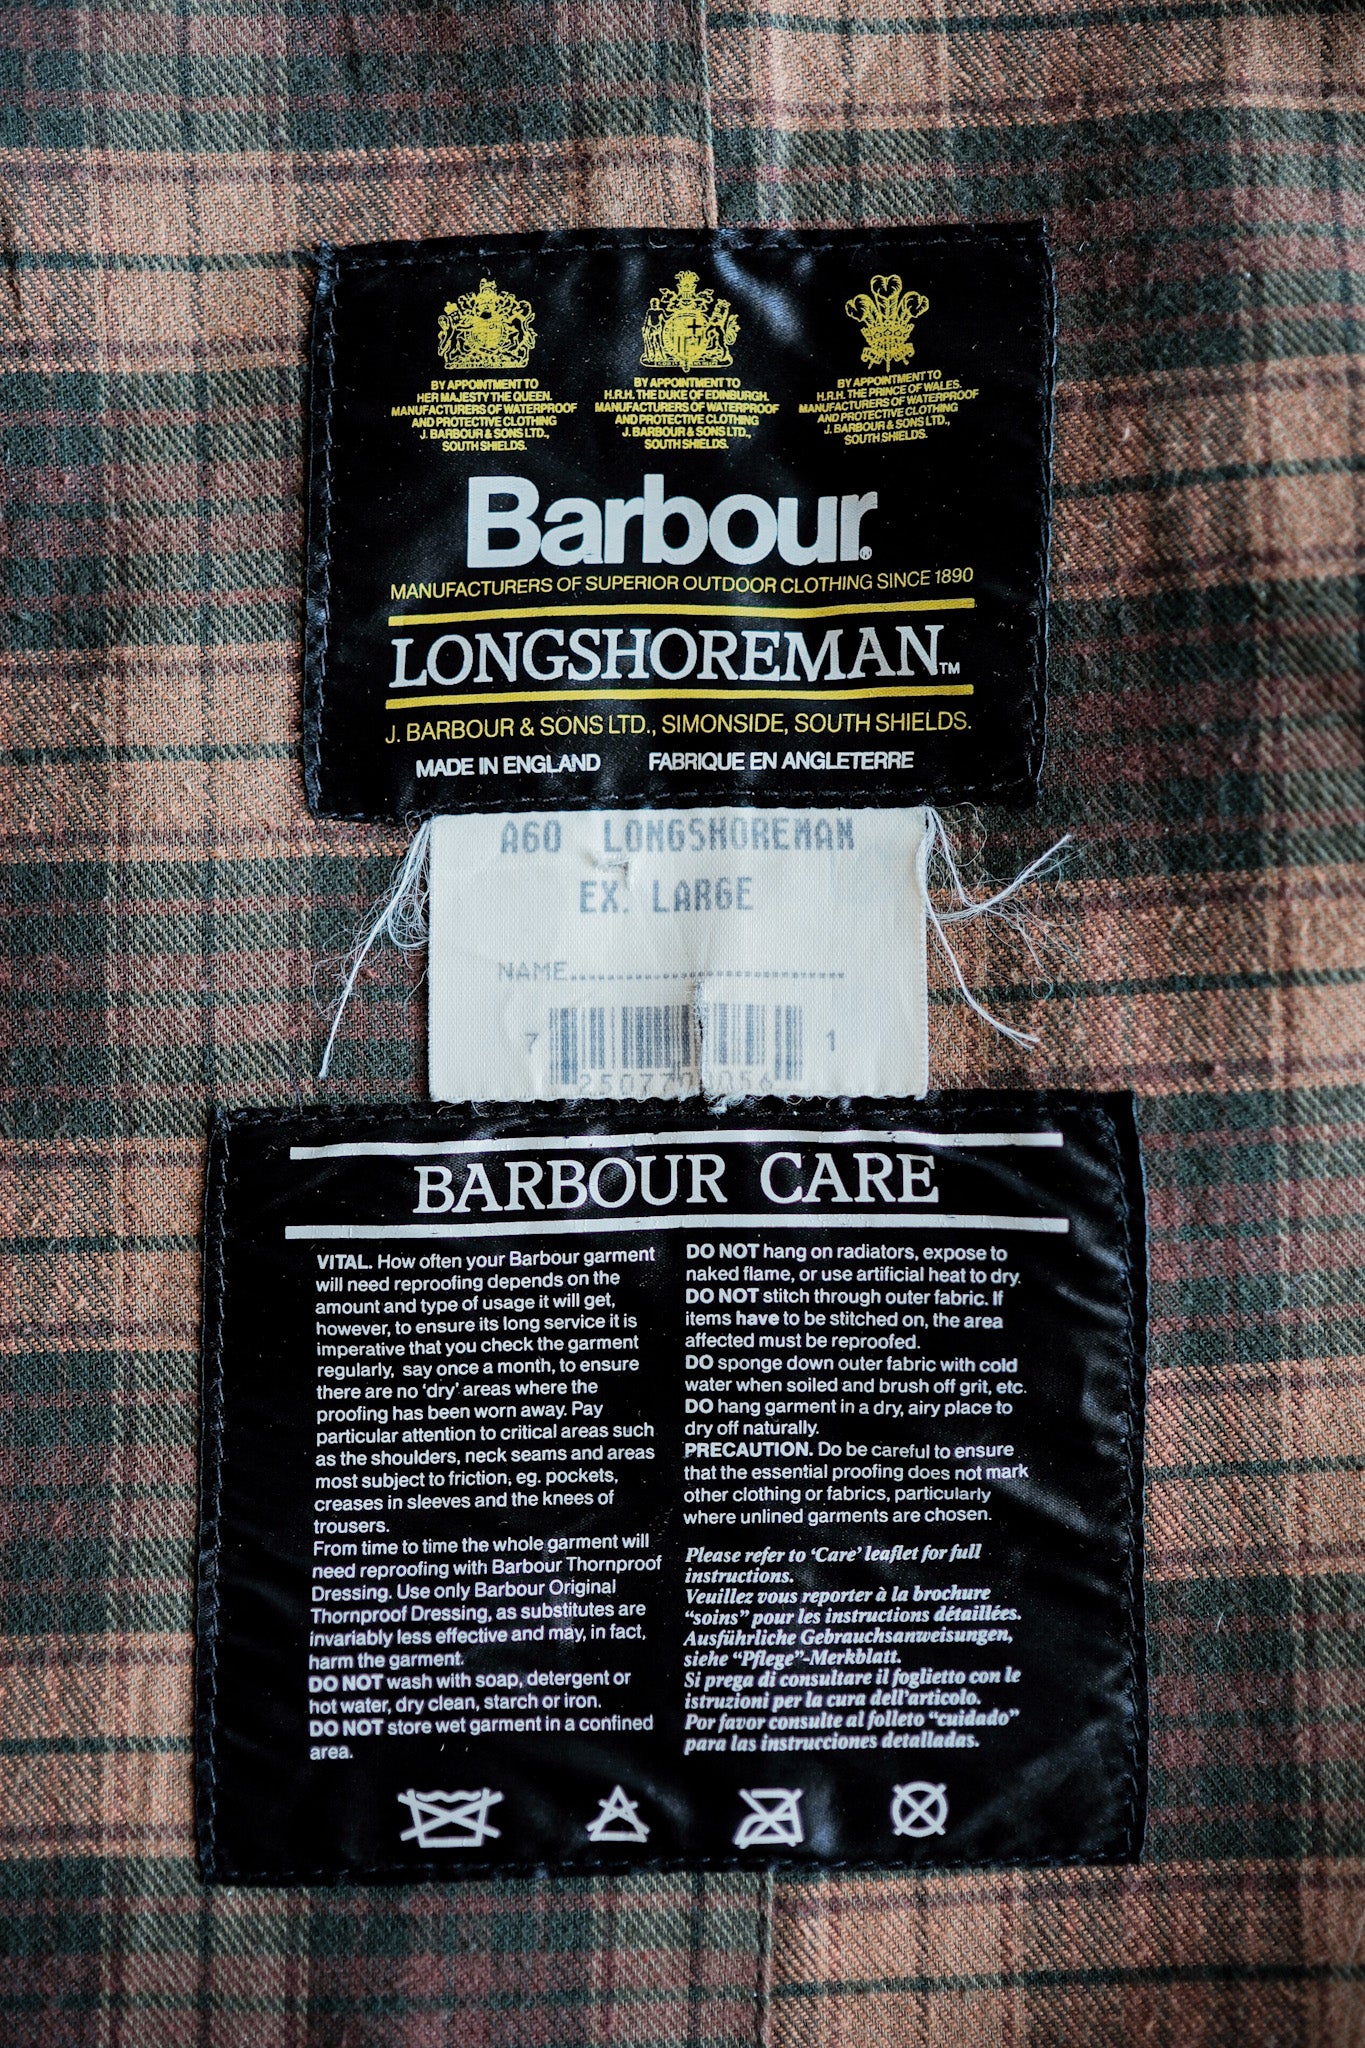 [~ 90's] Barbour vintage "Longshoreman" 3 Crest Size.ex Large